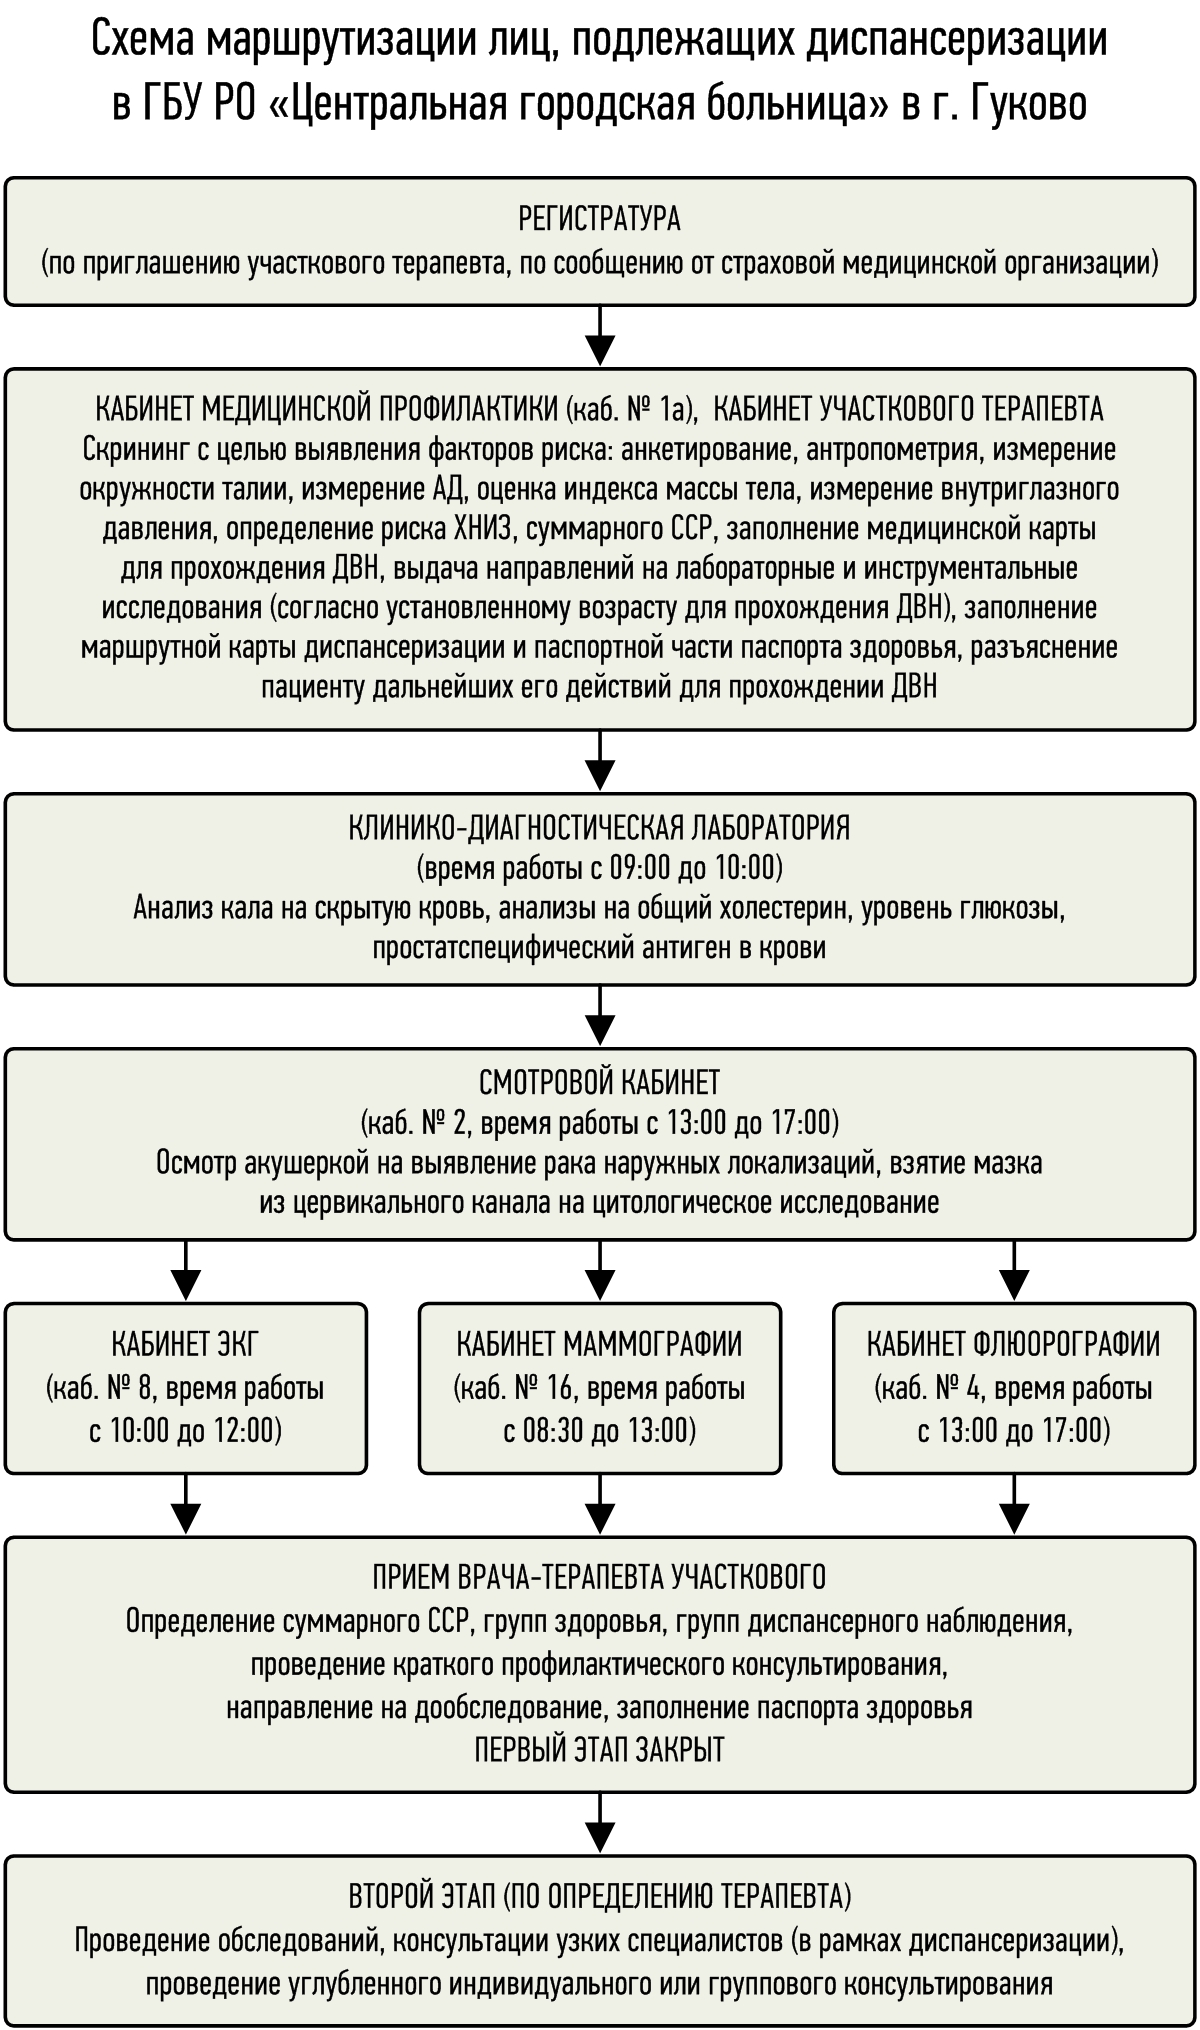 Схема маршрутизации лиц, подлежащих диспансеризации  в ГБУ РО «Центральная городская больница» в г. Гуково